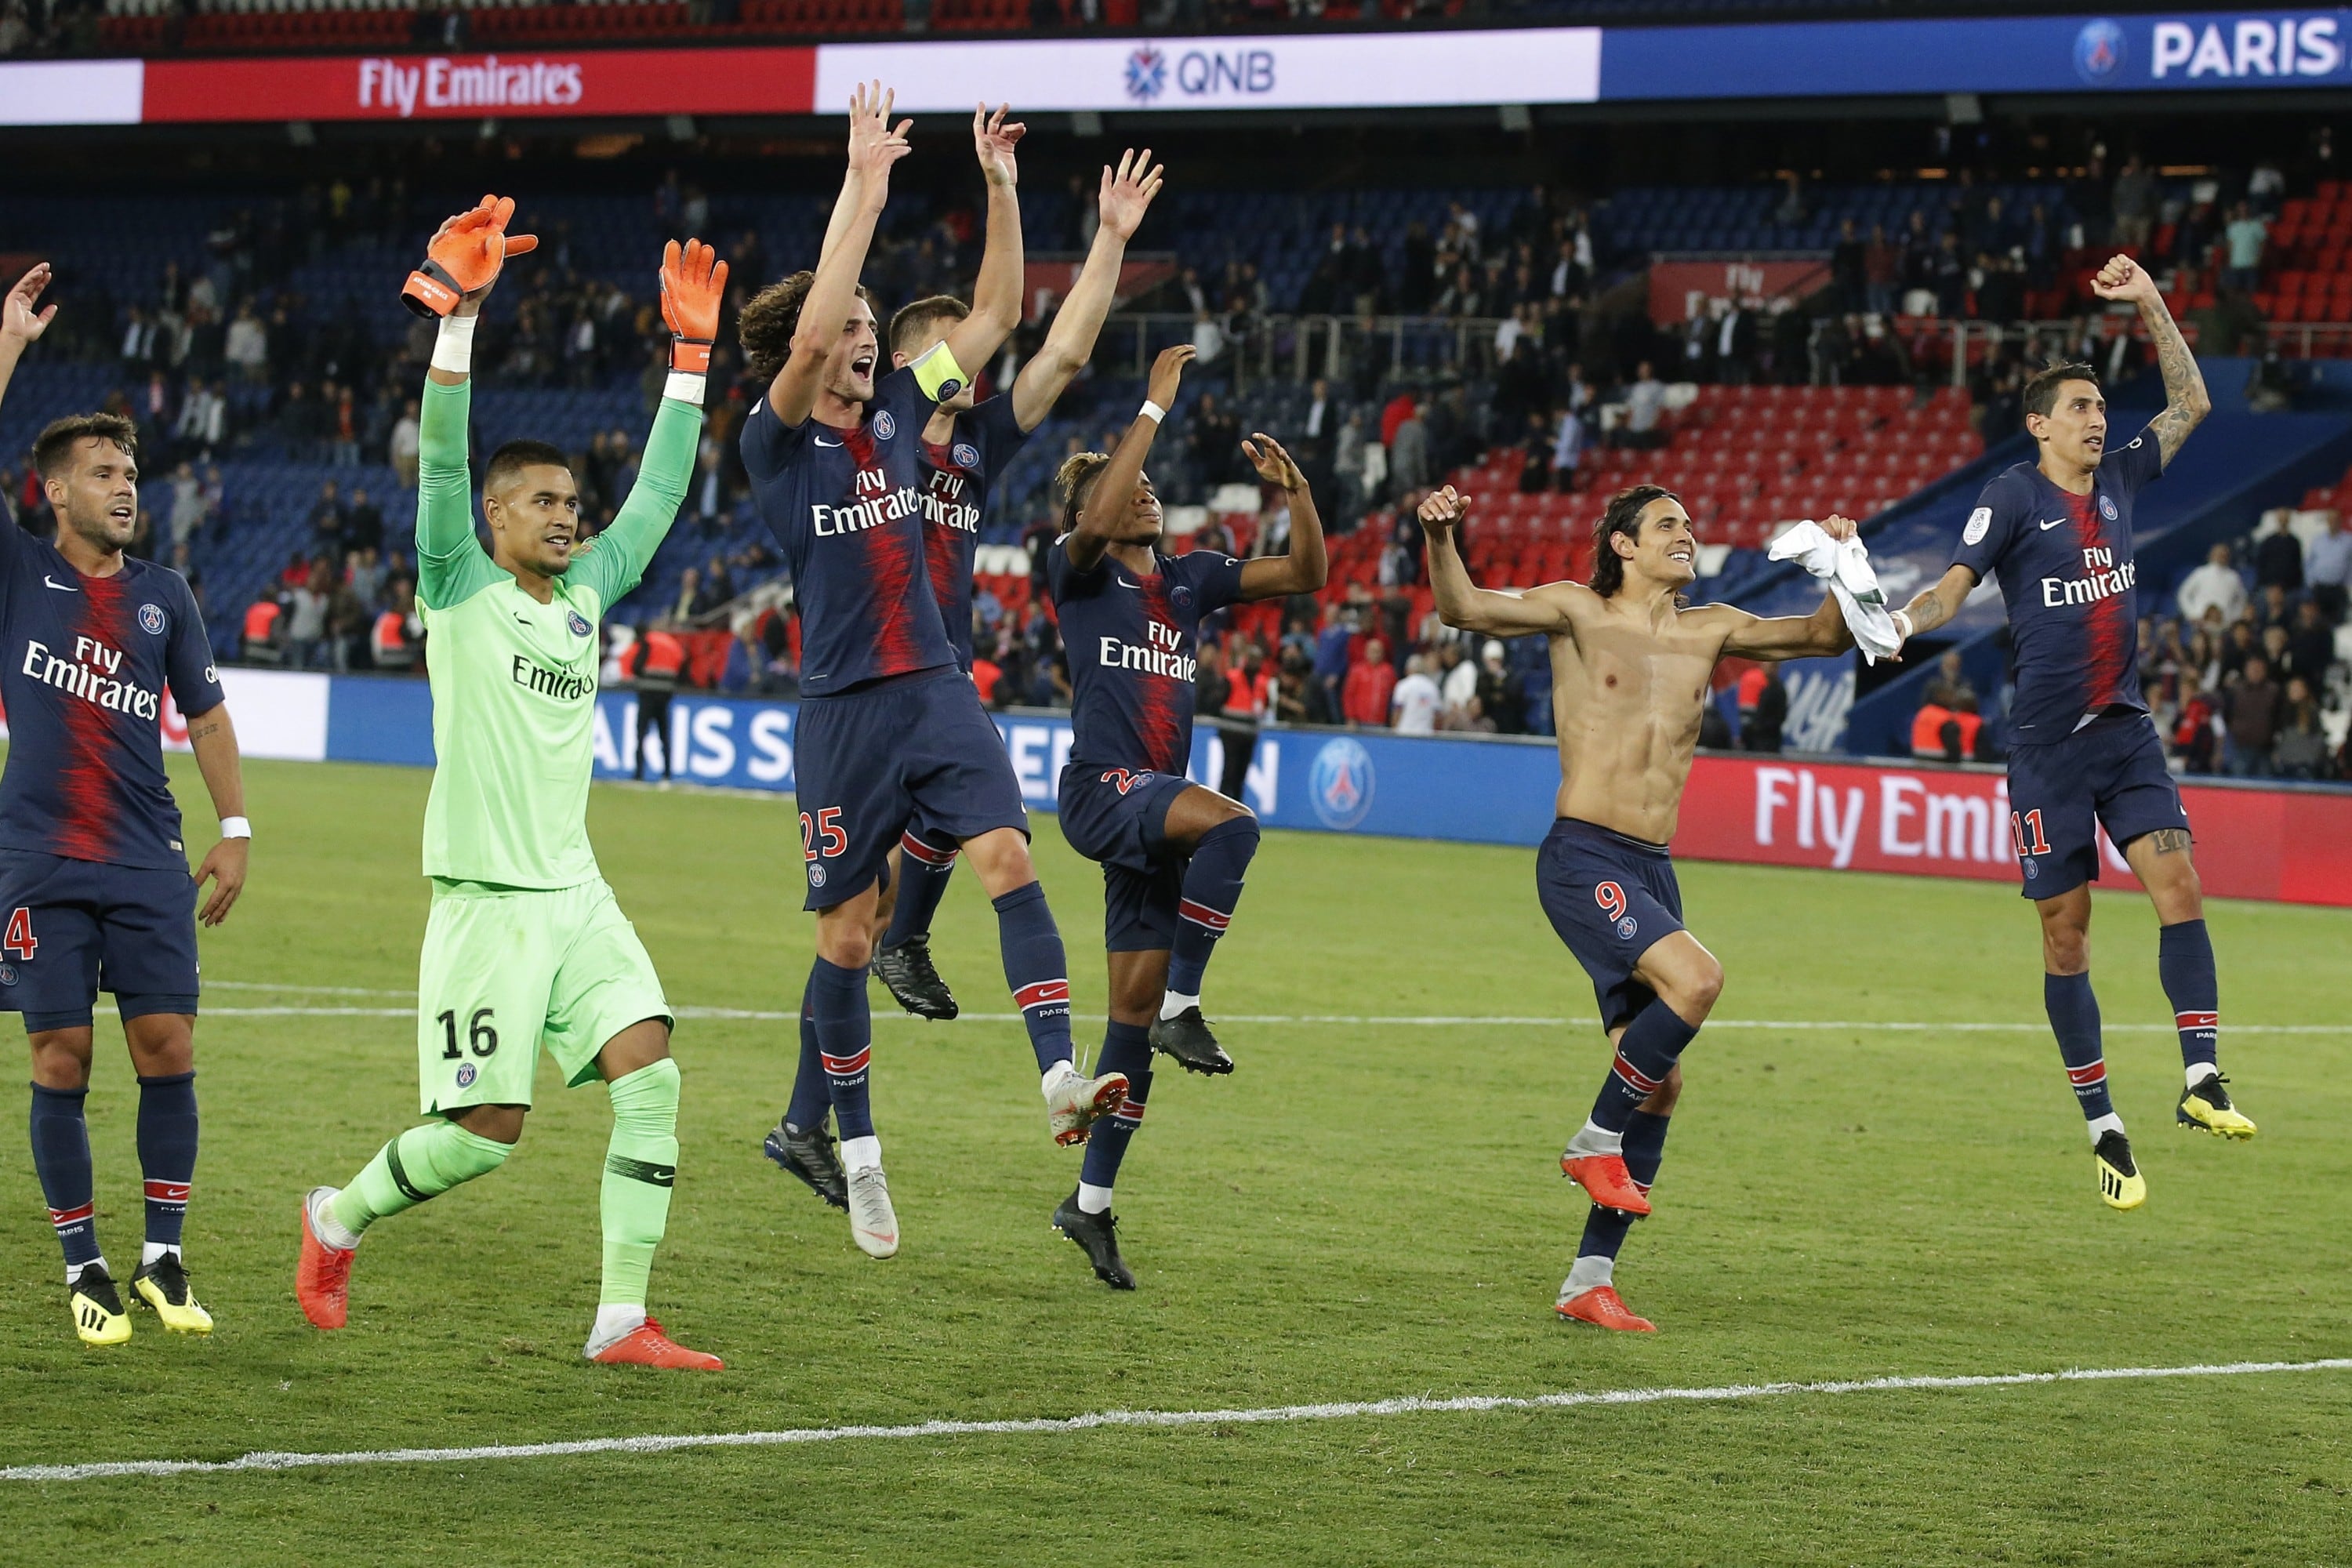 PSG goleó 4-0 a Saint Etienne por la jornada 5 de la Ligue 1 y se mantiene como líder.